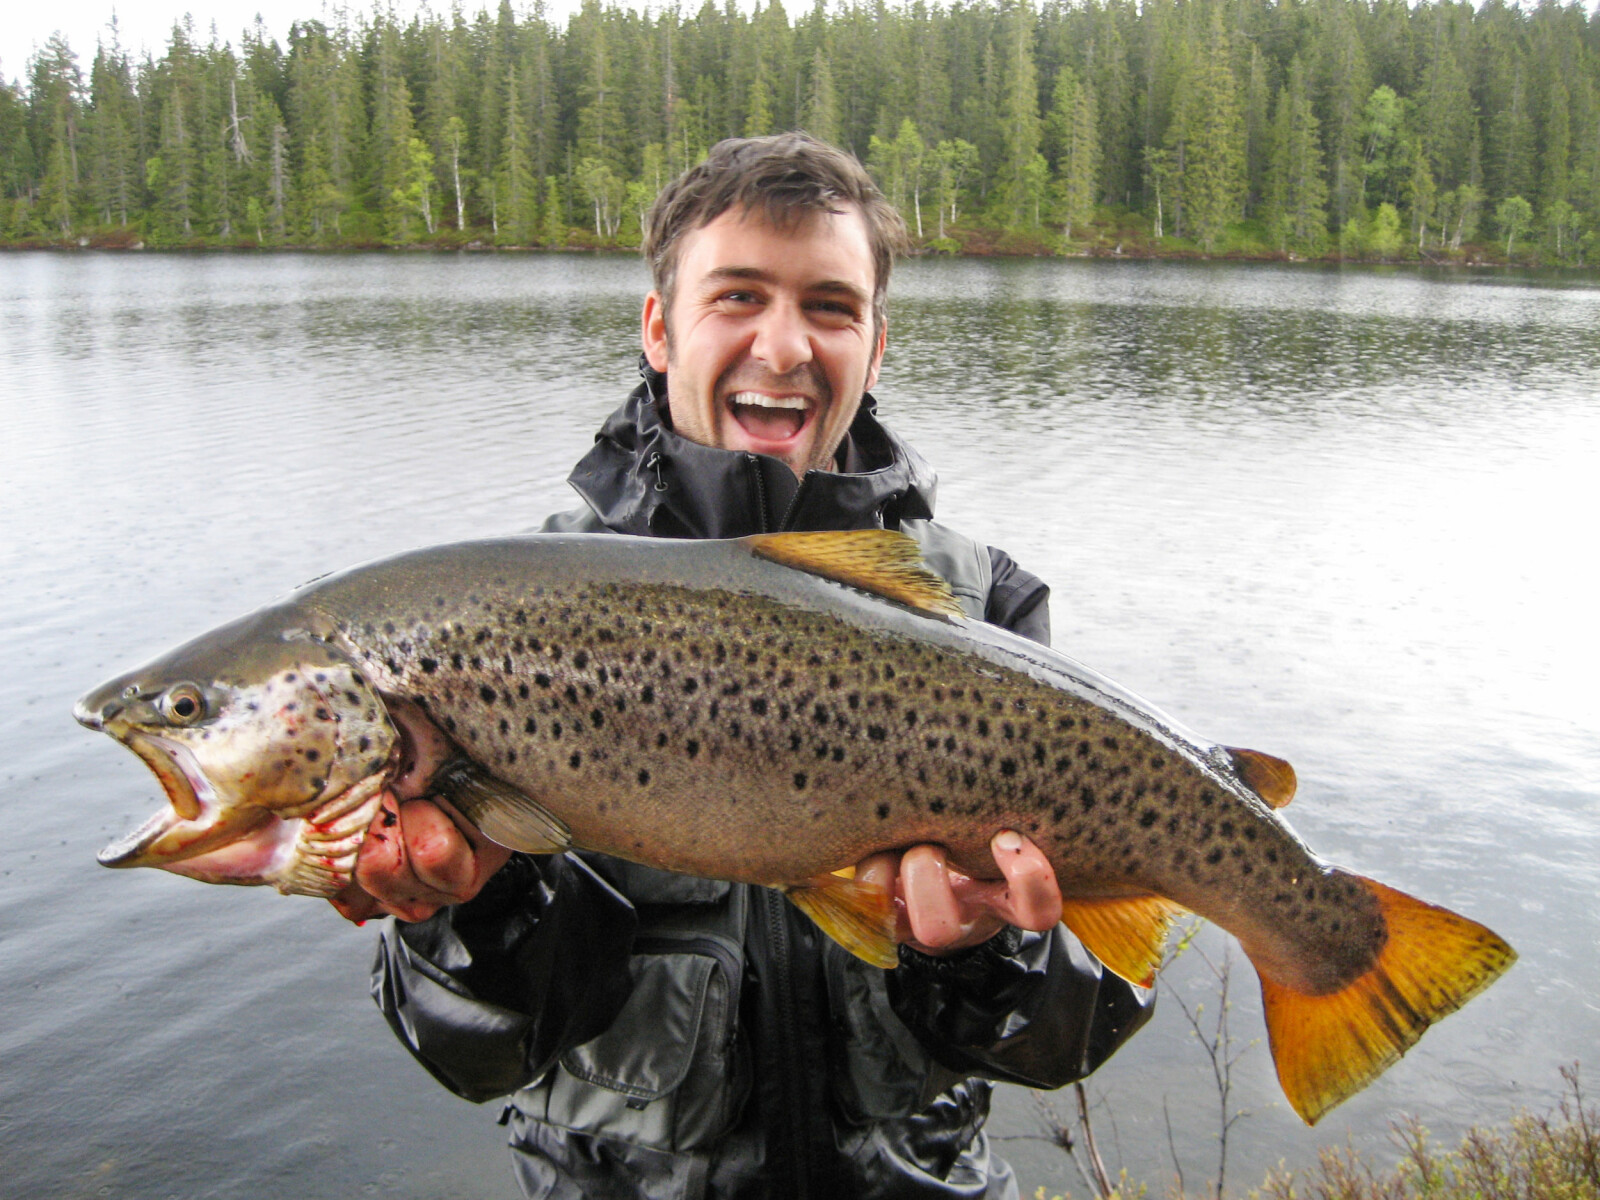 <b>PÅ WOBB­LER:</b> Kim Ma­ri­us Bjørn­son Holm fikk den­ne femkilosen på wobb­ler i et av de sto­re van­ne­ne nord i mar­ka for et par år si­den. (Foto: Pri­vat)